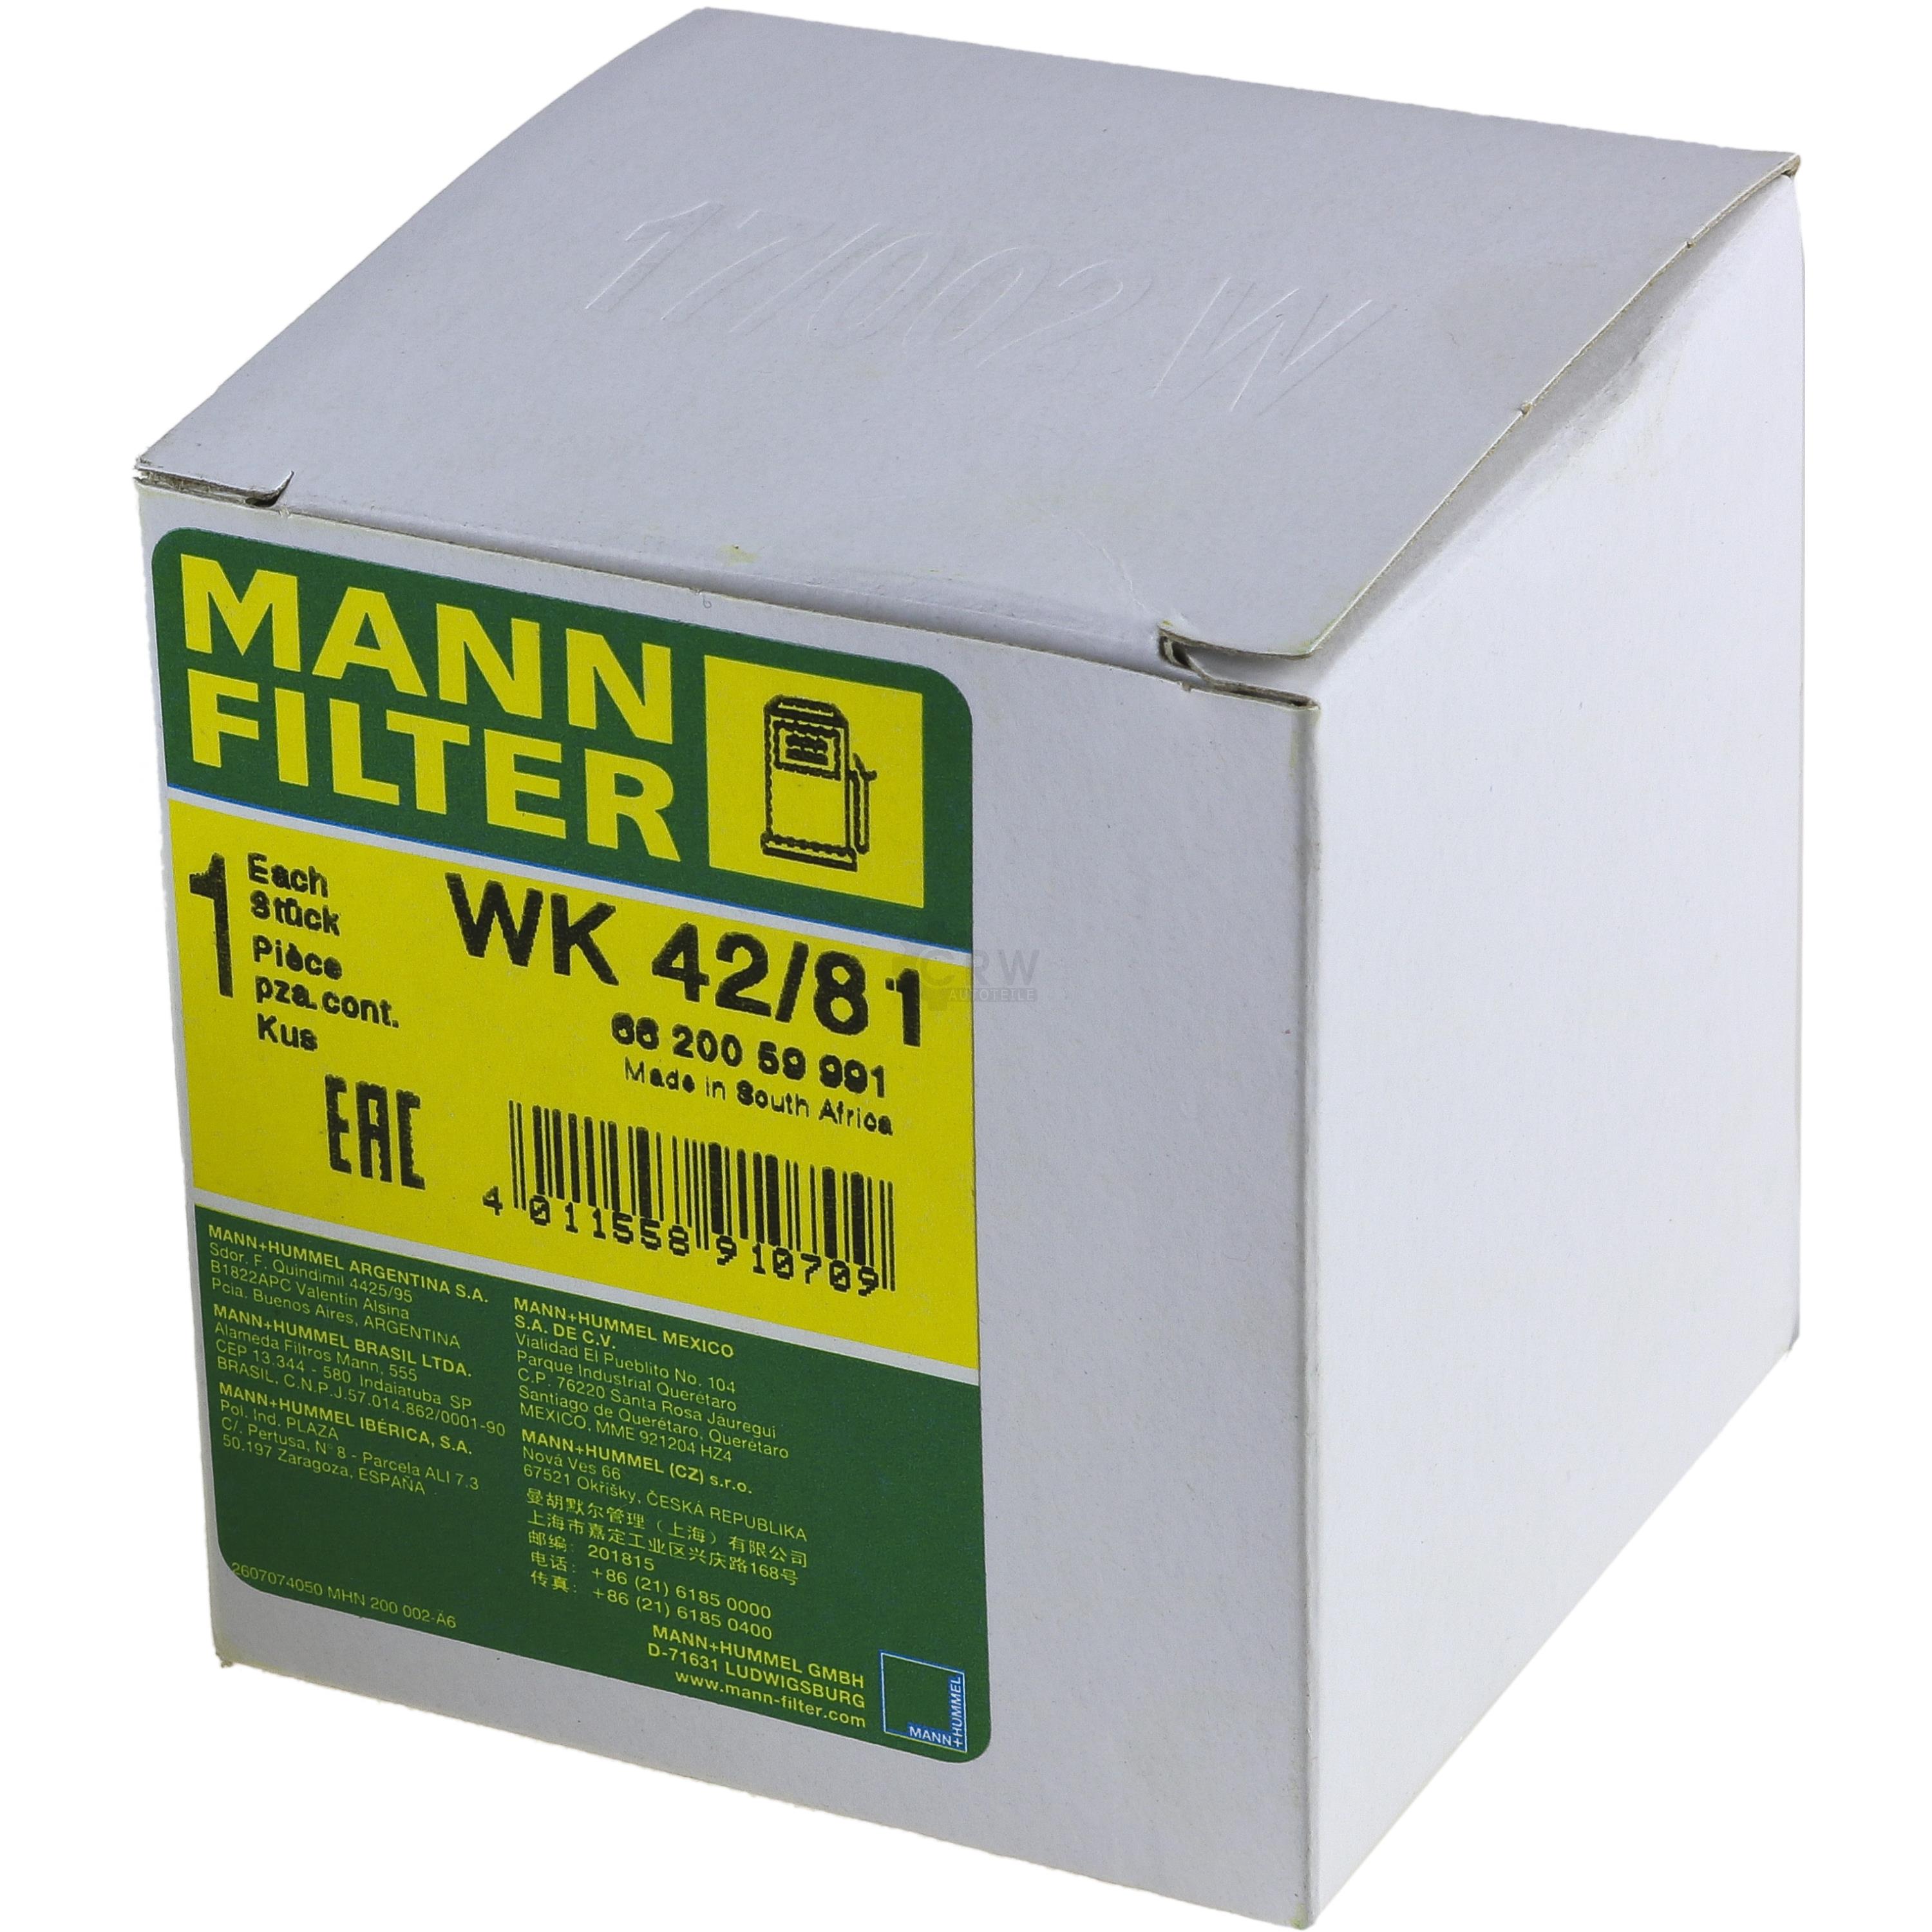 MANN-FILTER Kraftstofffilter WK 42/81 Fuel Filter